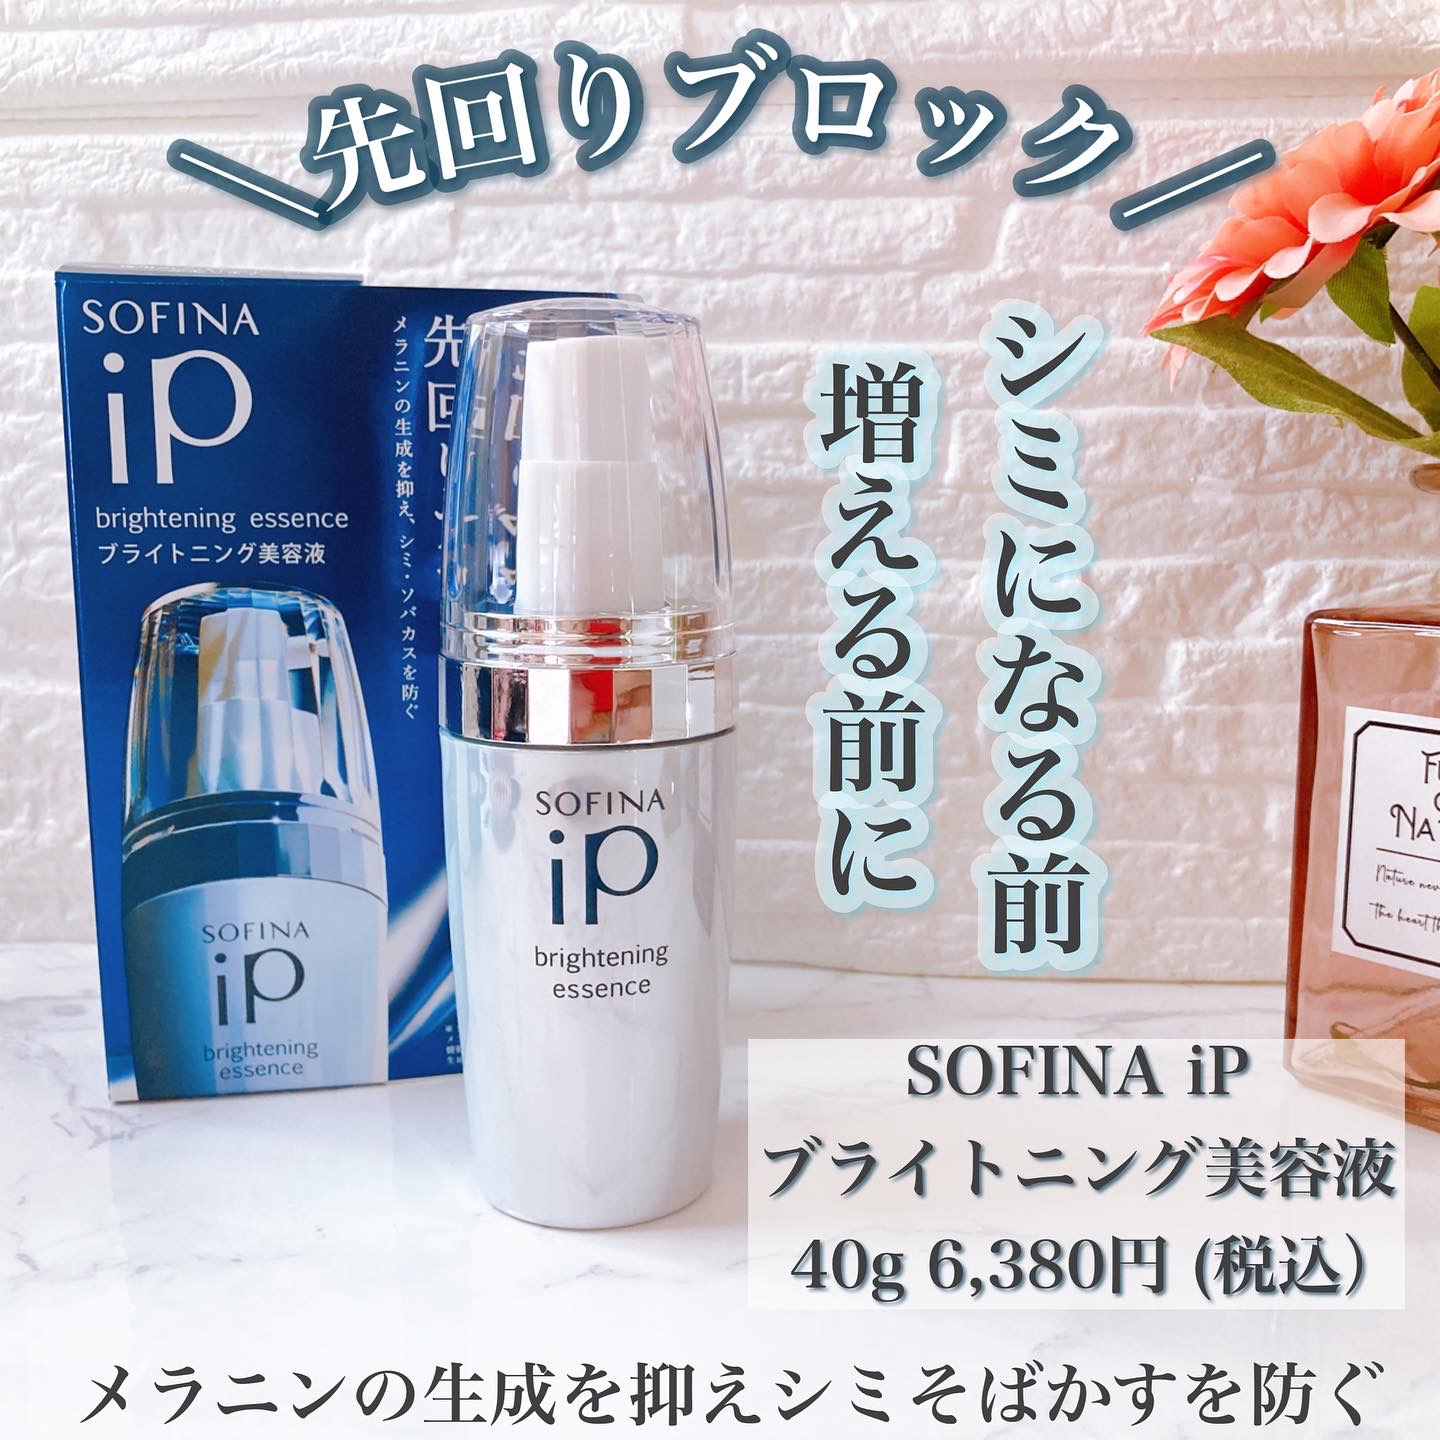 SOFINA iP ブライトニング美容液40g 6,380円 (税込）を使ったメグさんのクチコミ画像1